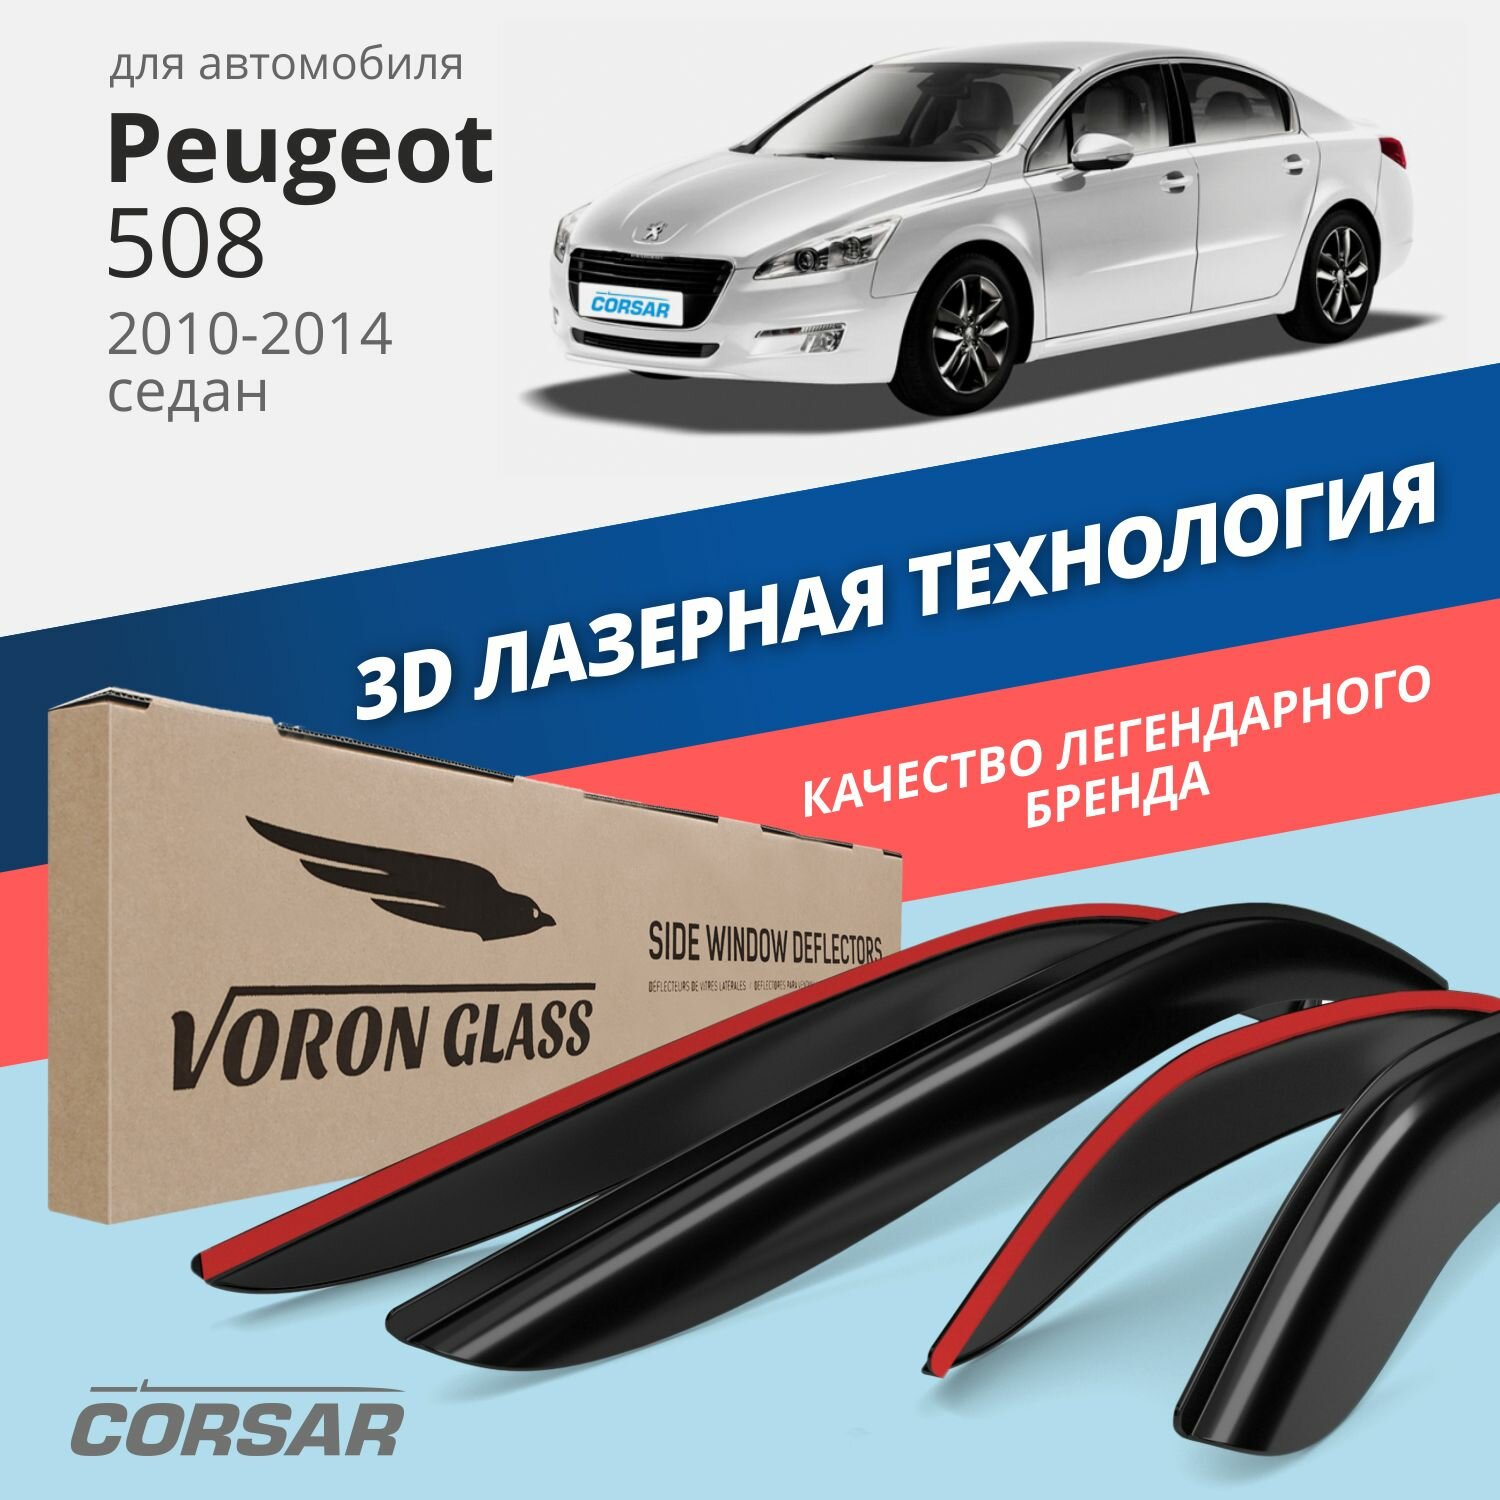 Дефлекторы на окна Voron Glass CORSAR Peugeot 508 2010-н.в., комплект 4шт, - фото №1